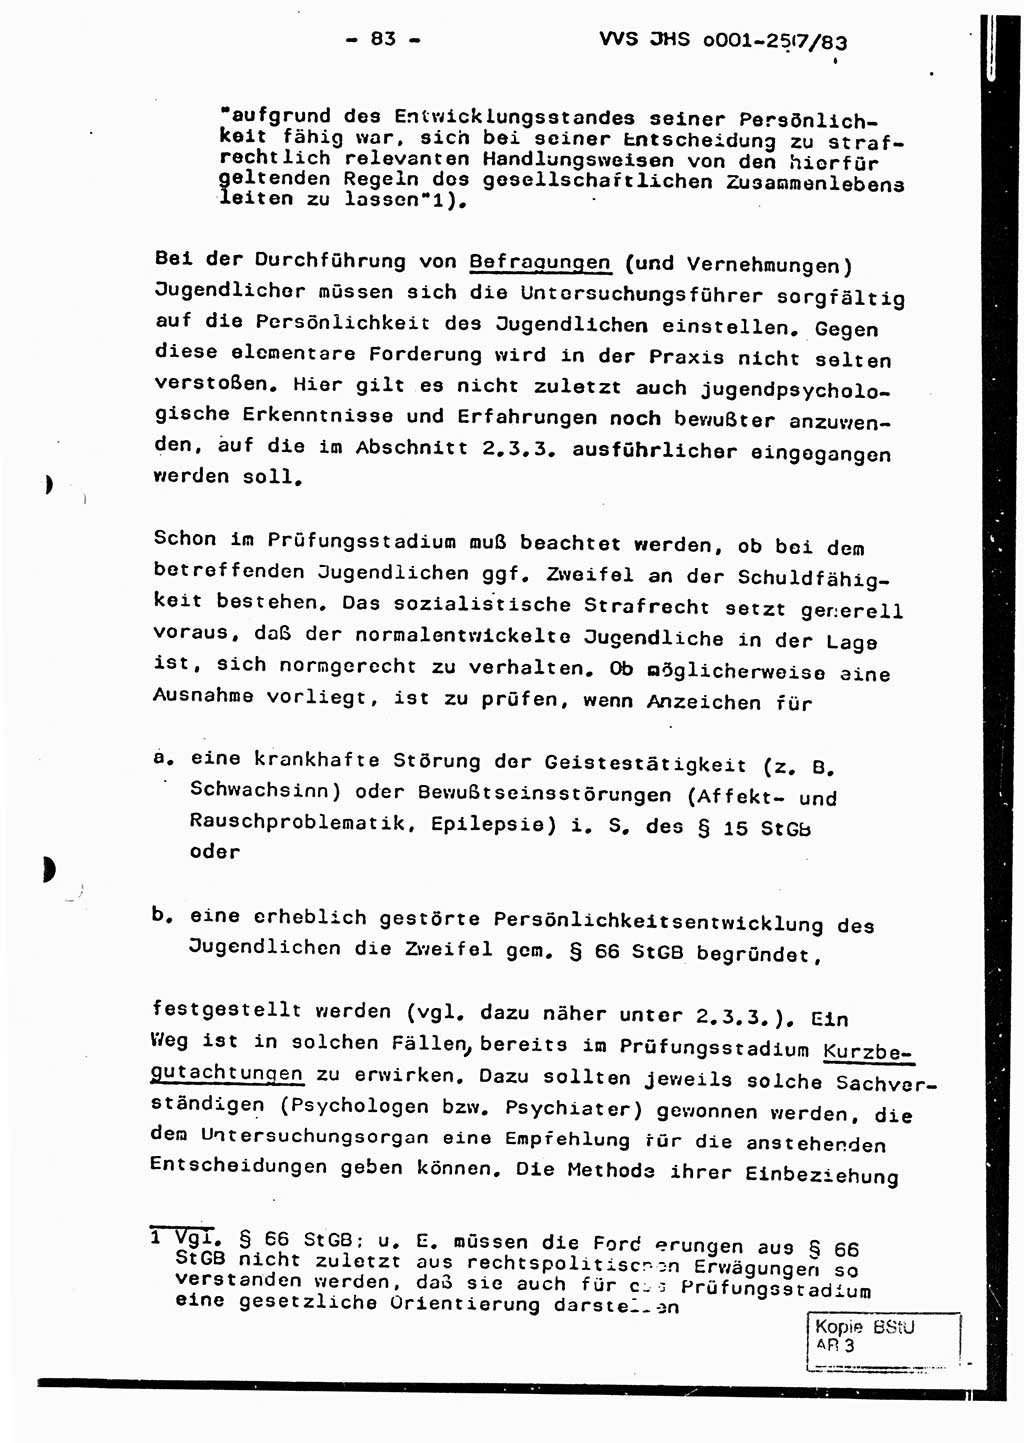 Dissertation, Oberst Helmut Lubas (BV Mdg.), Oberstleutnant Manfred Eschberger (HA IX), Oberleutnant Hans-Jürgen Ludwig (JHS), Ministerium für Staatssicherheit (MfS) [Deutsche Demokratische Republik (DDR)], Juristische Hochschule (JHS), Vertrauliche Verschlußsache (VVS) o001-257/83, Potsdam 1983, Seite 83 (Diss. MfS DDR JHS VVS o001-257/83 1983, S. 83)